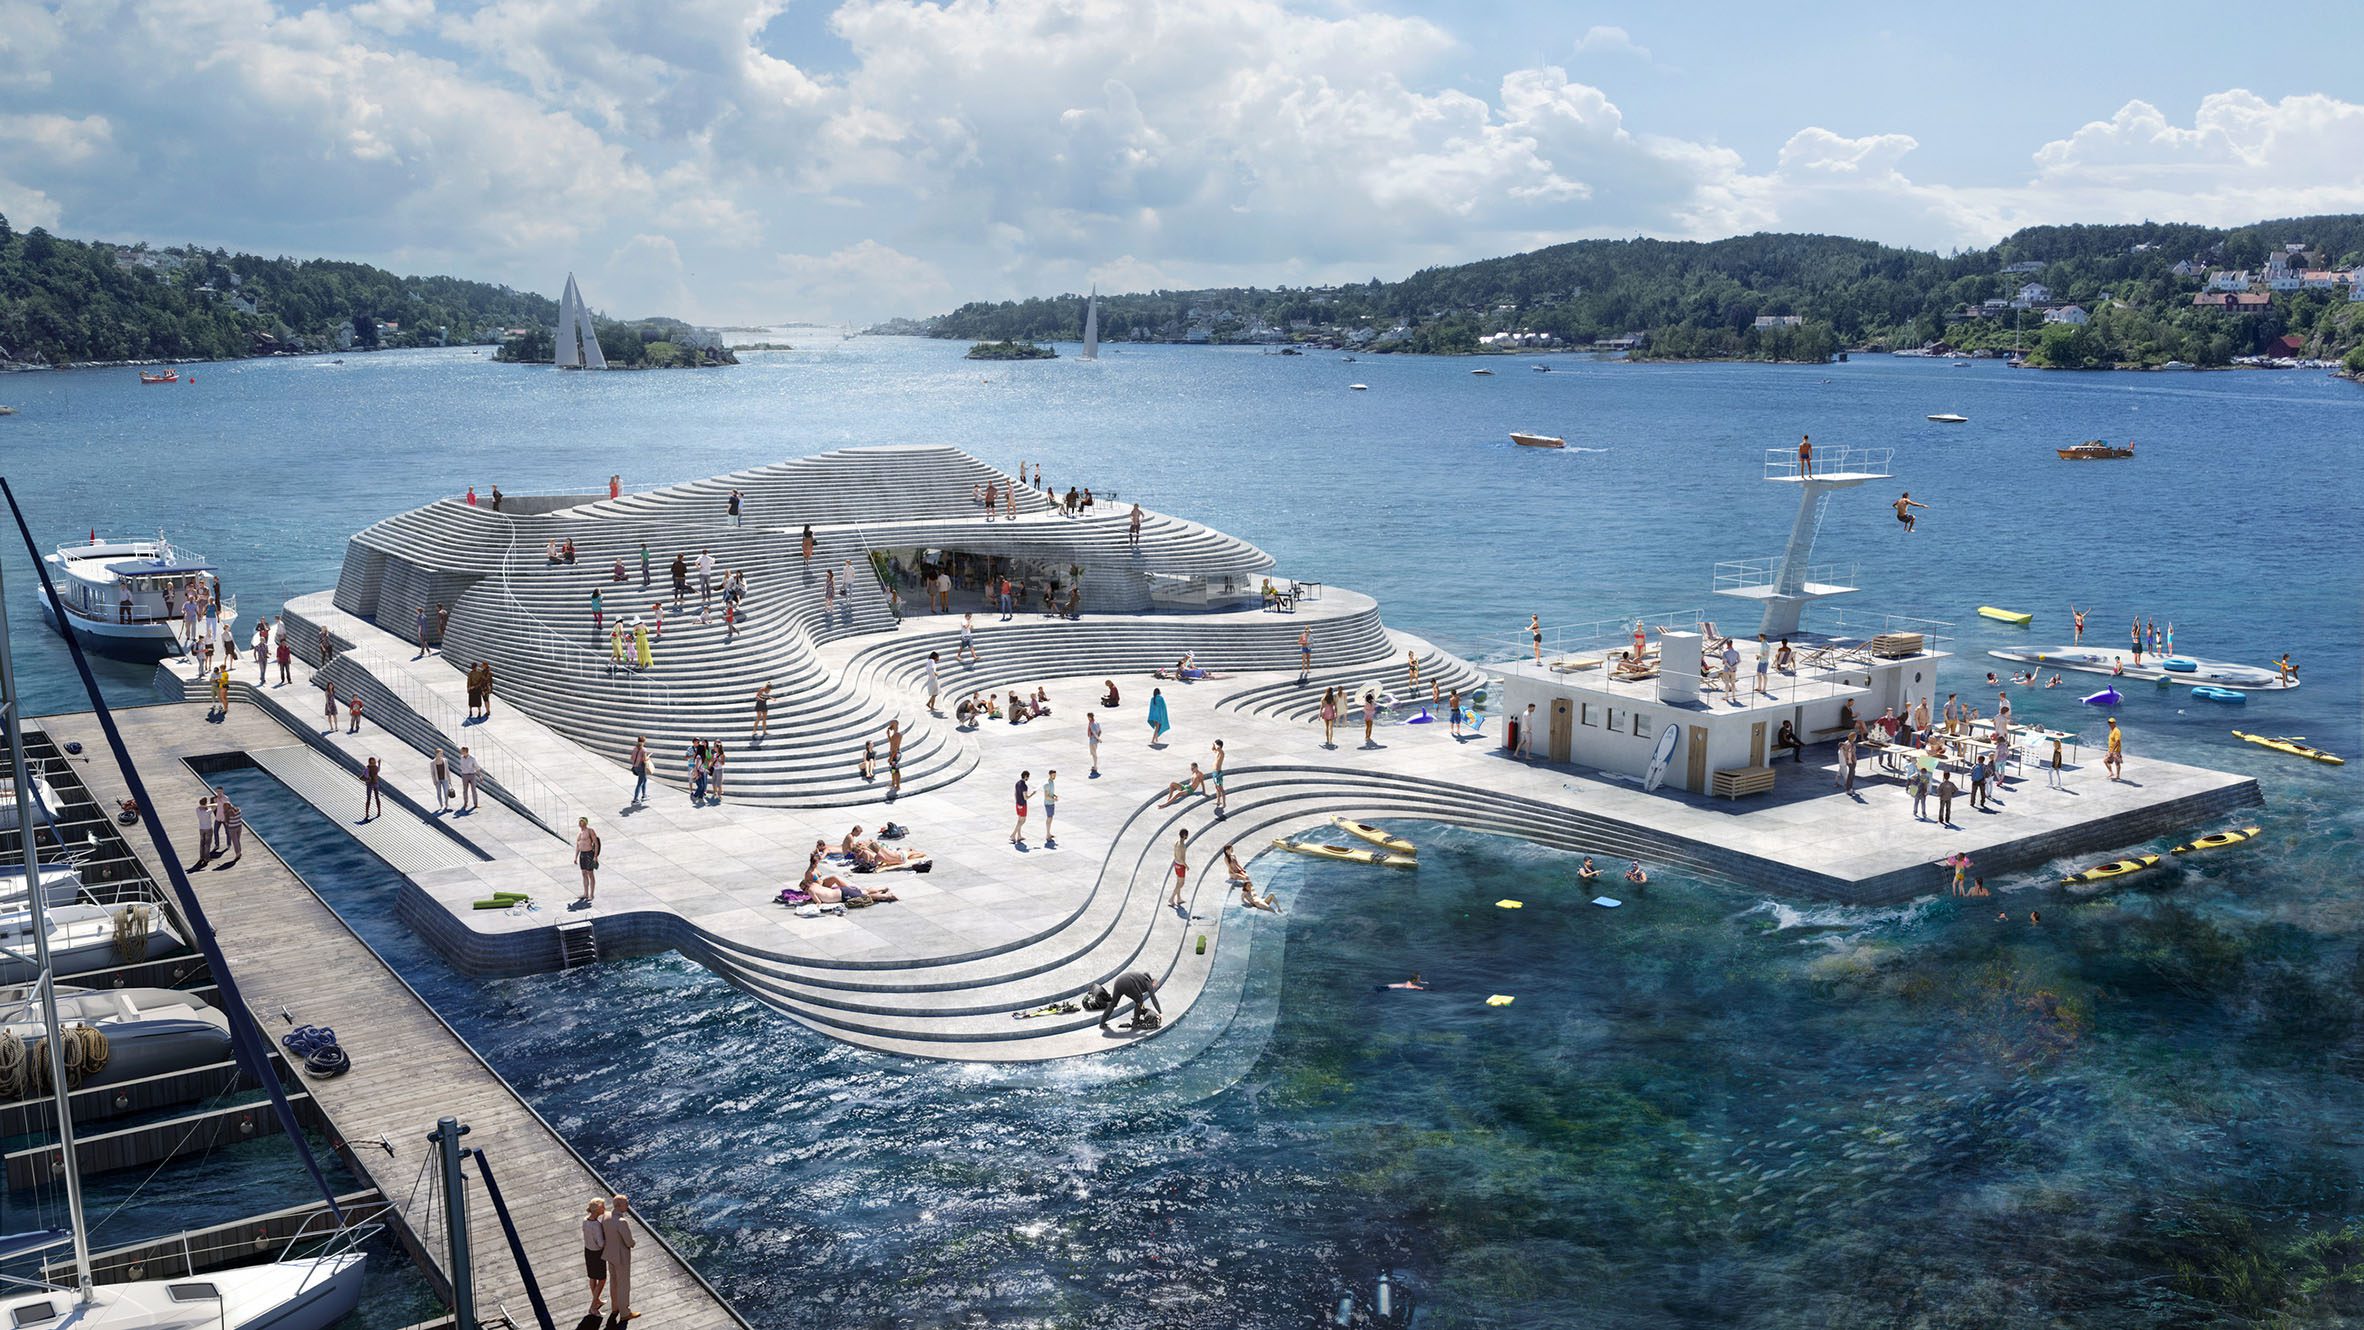 Knubben harbour bath redesign by Snohetta